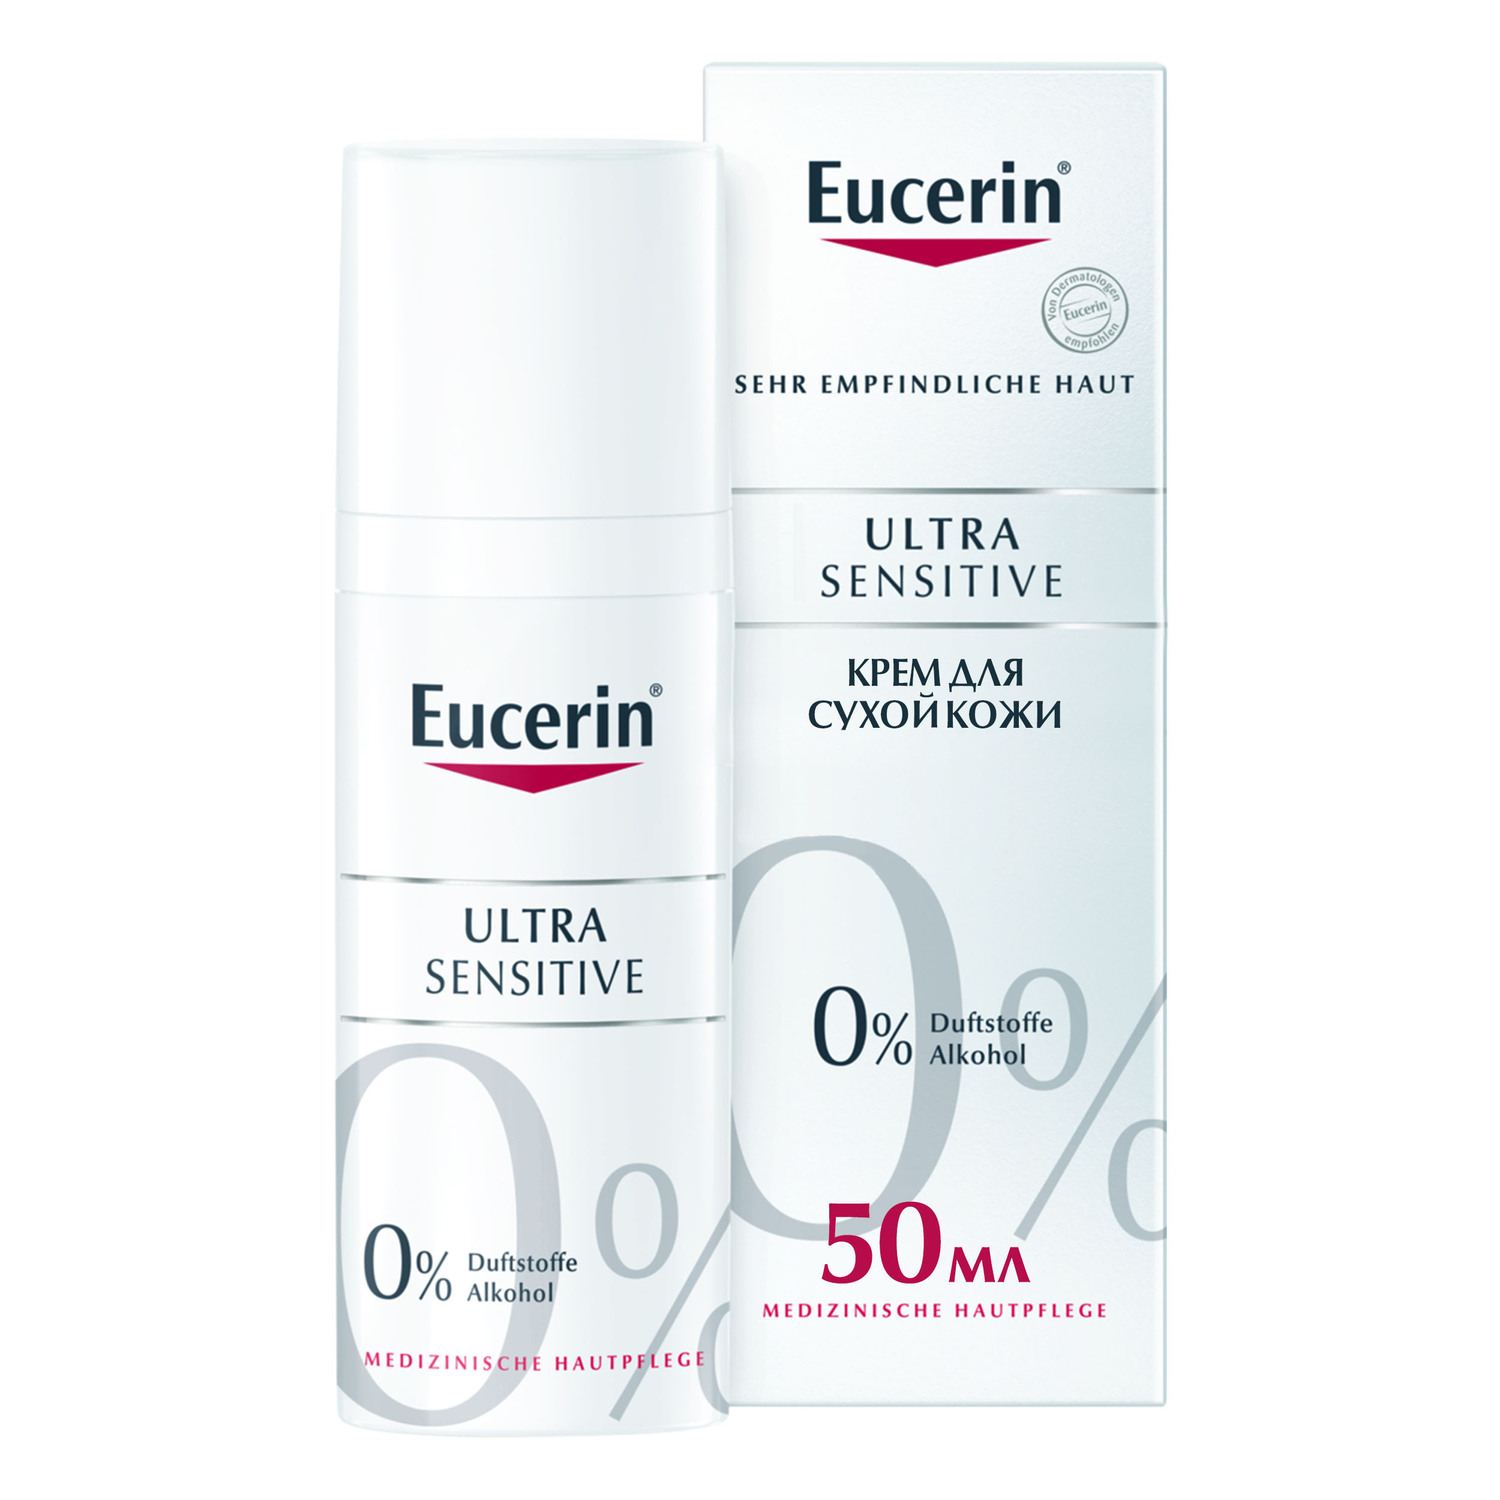 eucerin успокаивающий крем для чувствительной сухой кожи 50 мл eucerin ultrasensitive Eucerin Успокаивающий крем для чувствительной сухой кожи, 50 мл (Eucerin, UltraSensitive & AntiRedness)